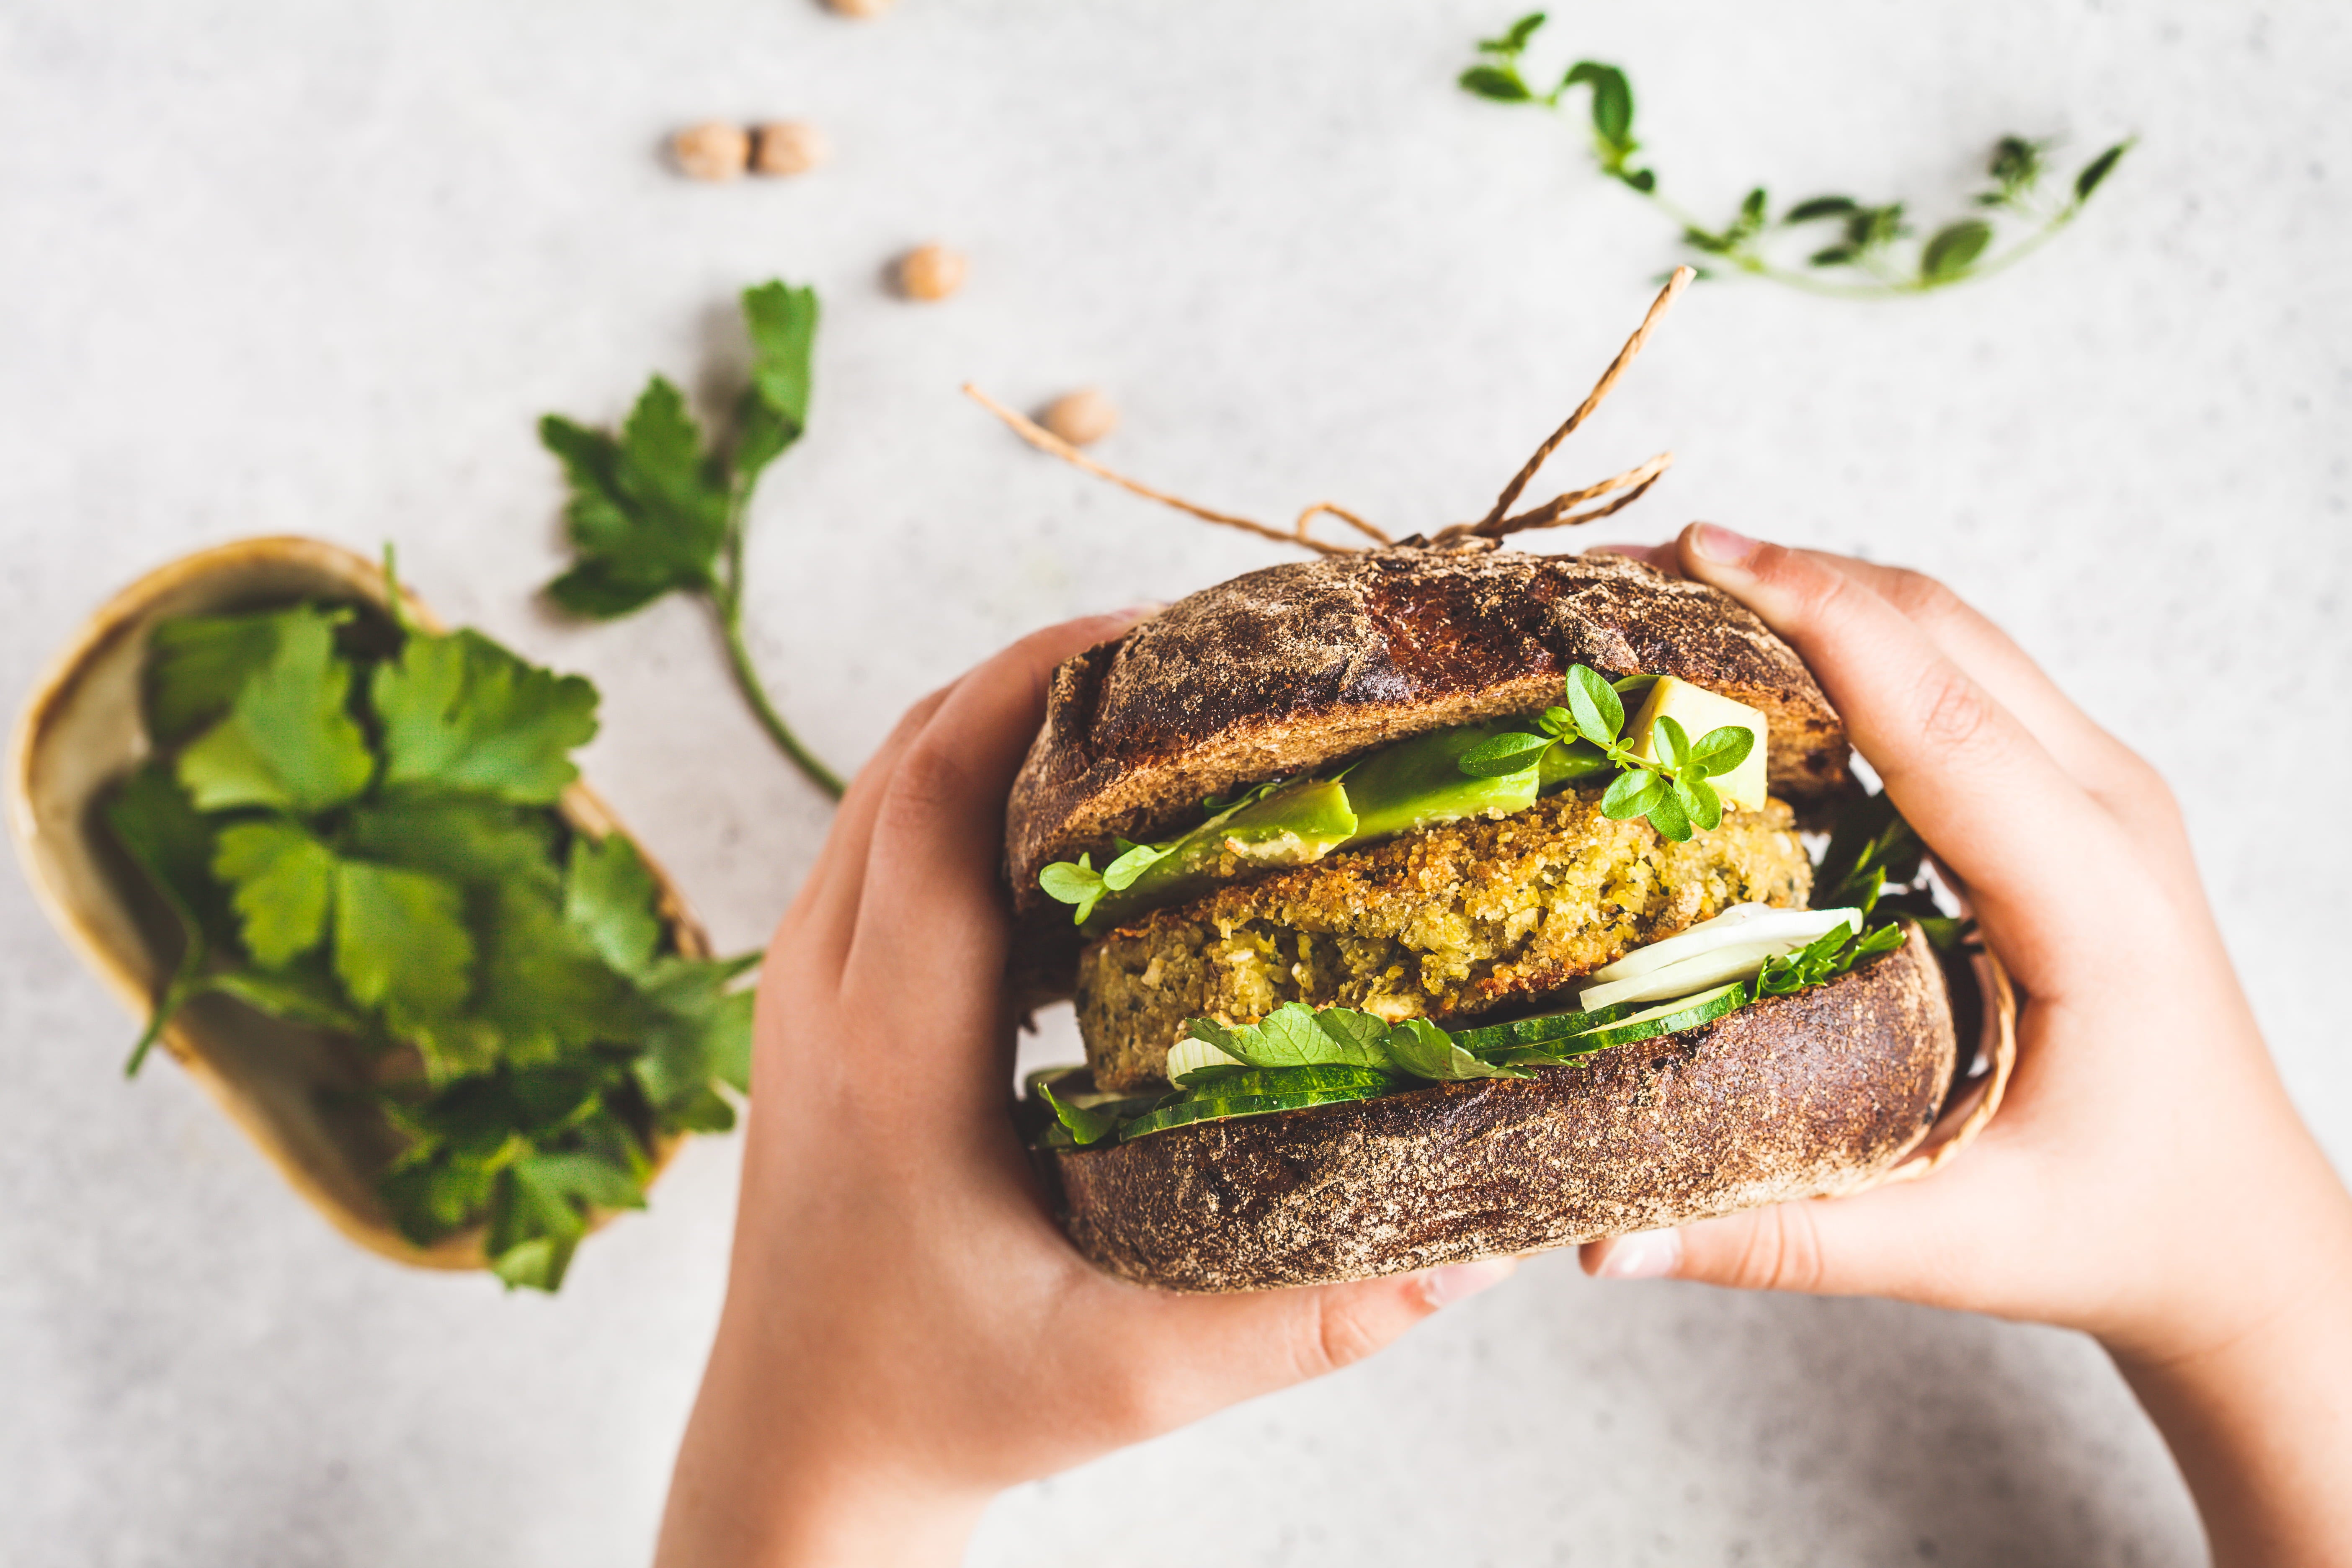 Foto de cima de duas mãos segurando um sanduíche de pão preto recheado de hambúrguer vegetariano e vegetais.